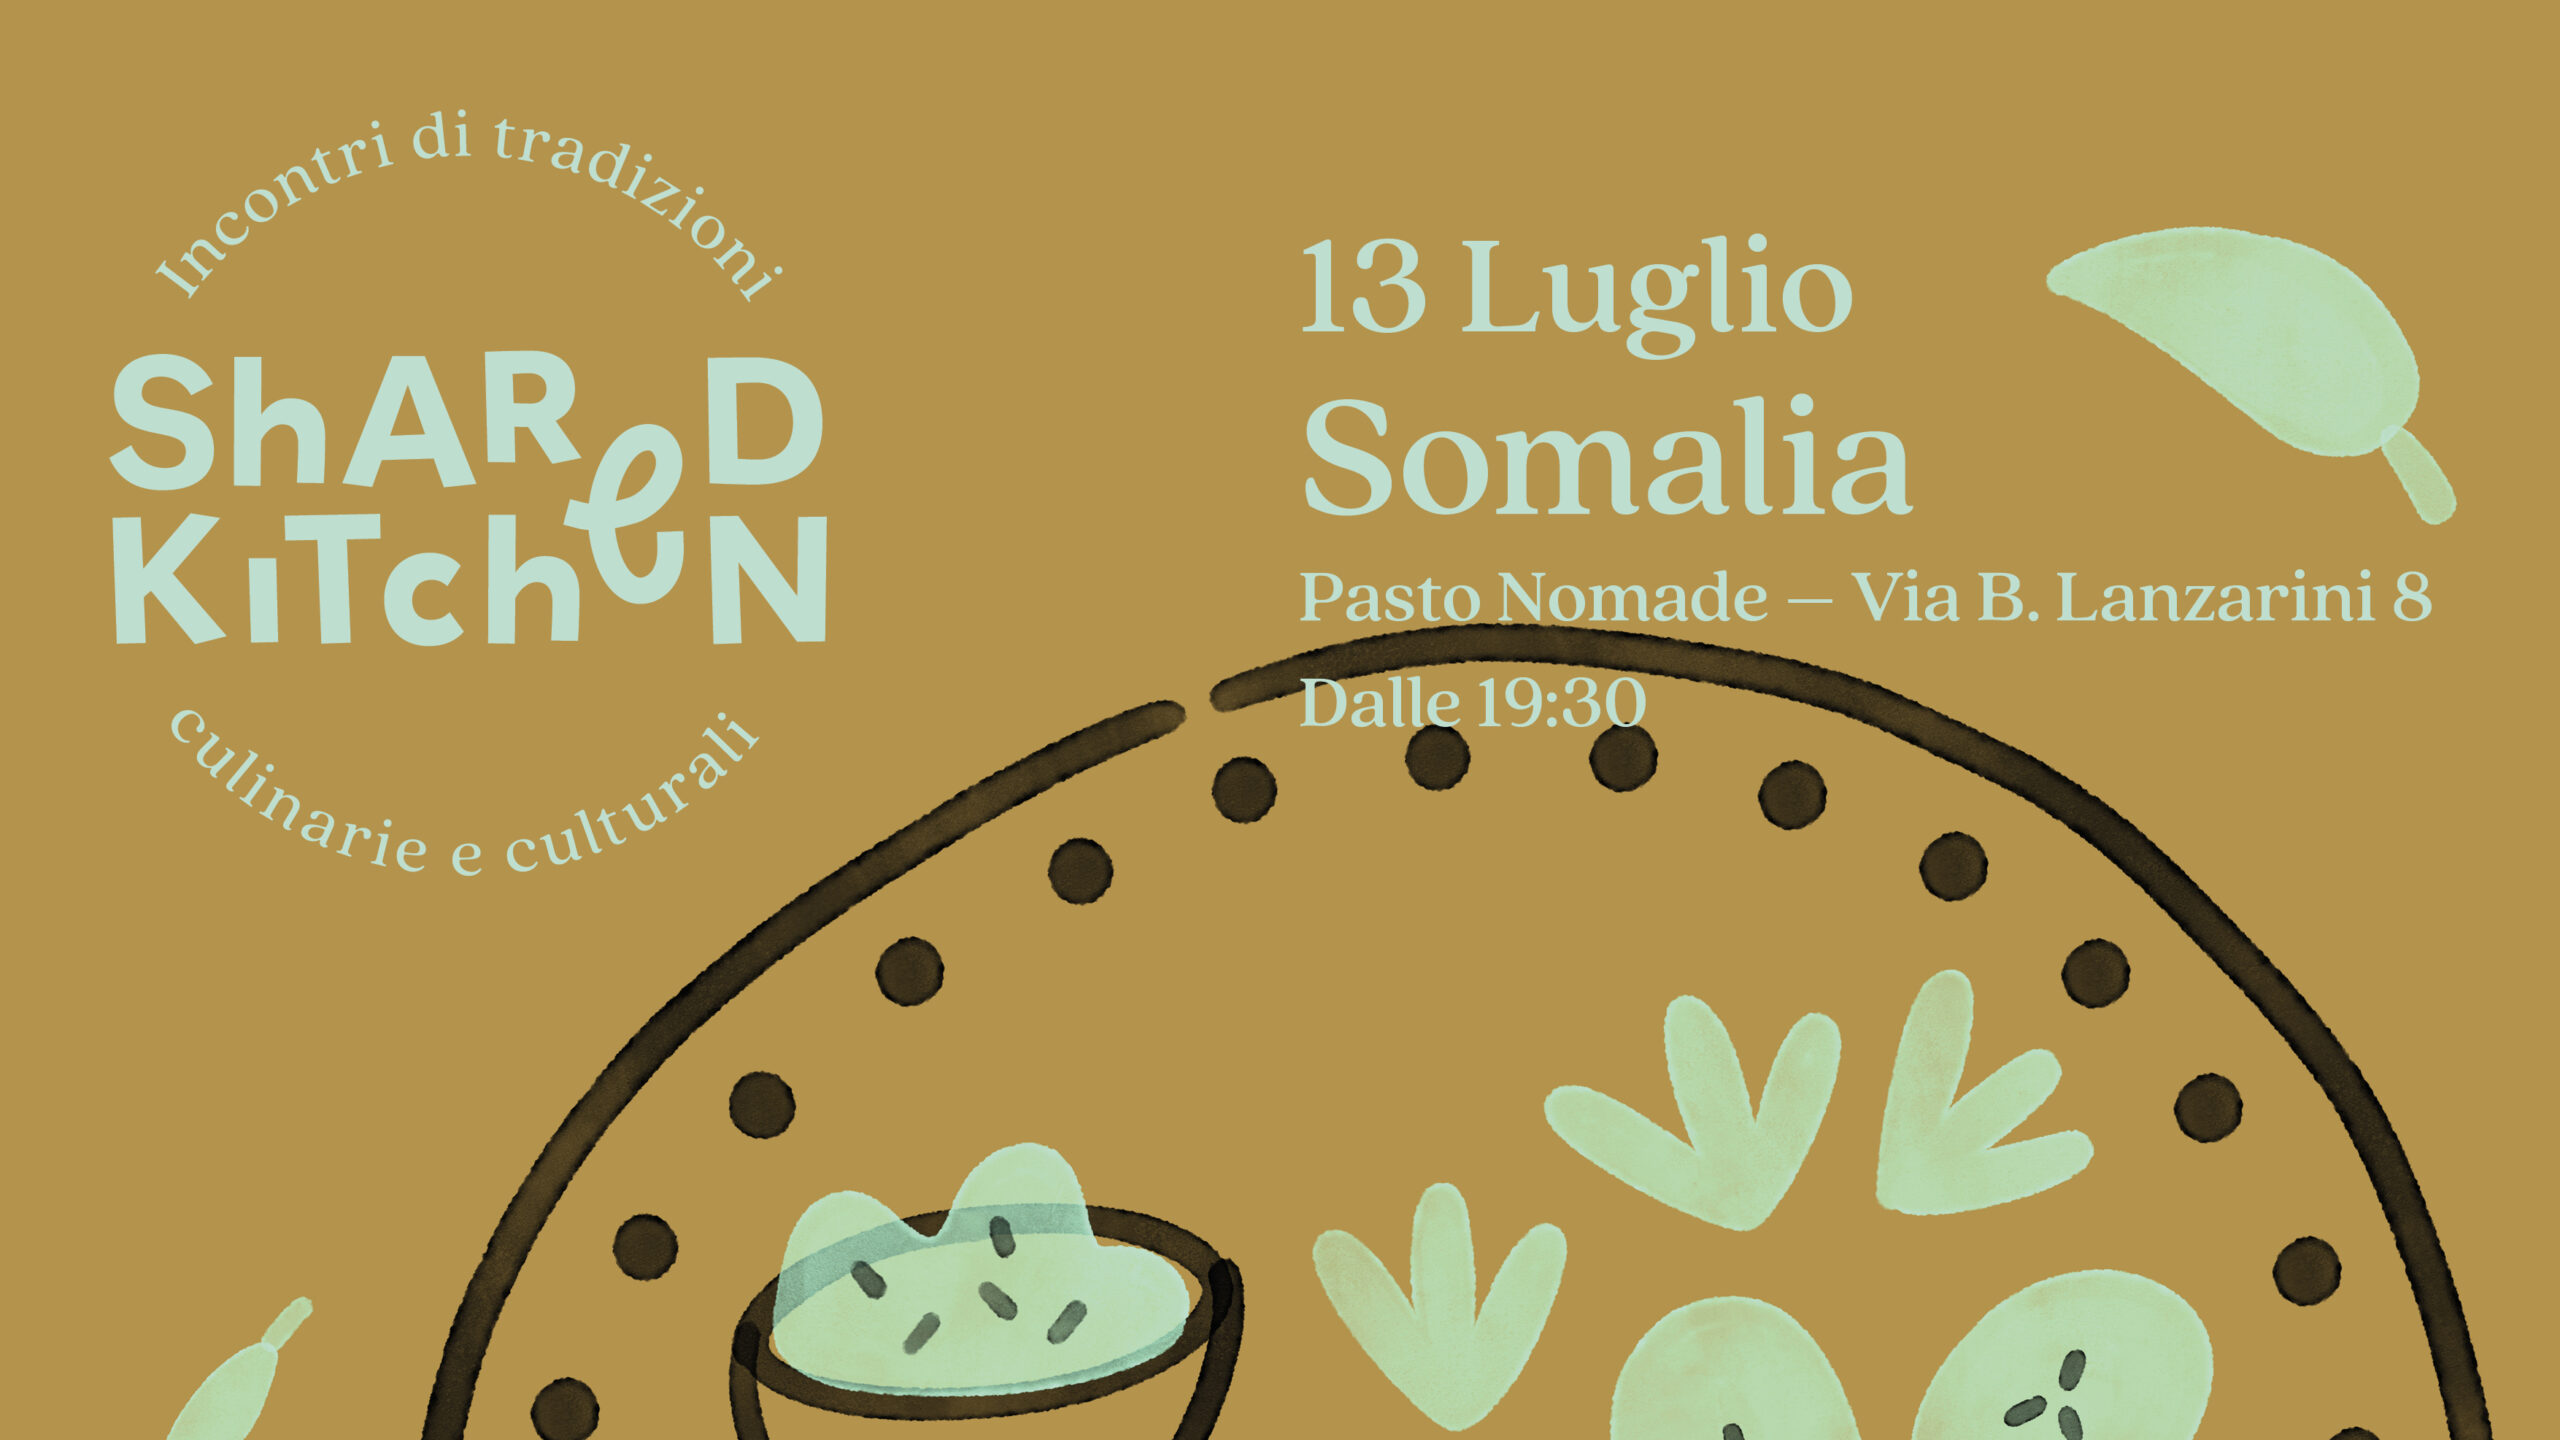 Shared Kitchen – Somalia